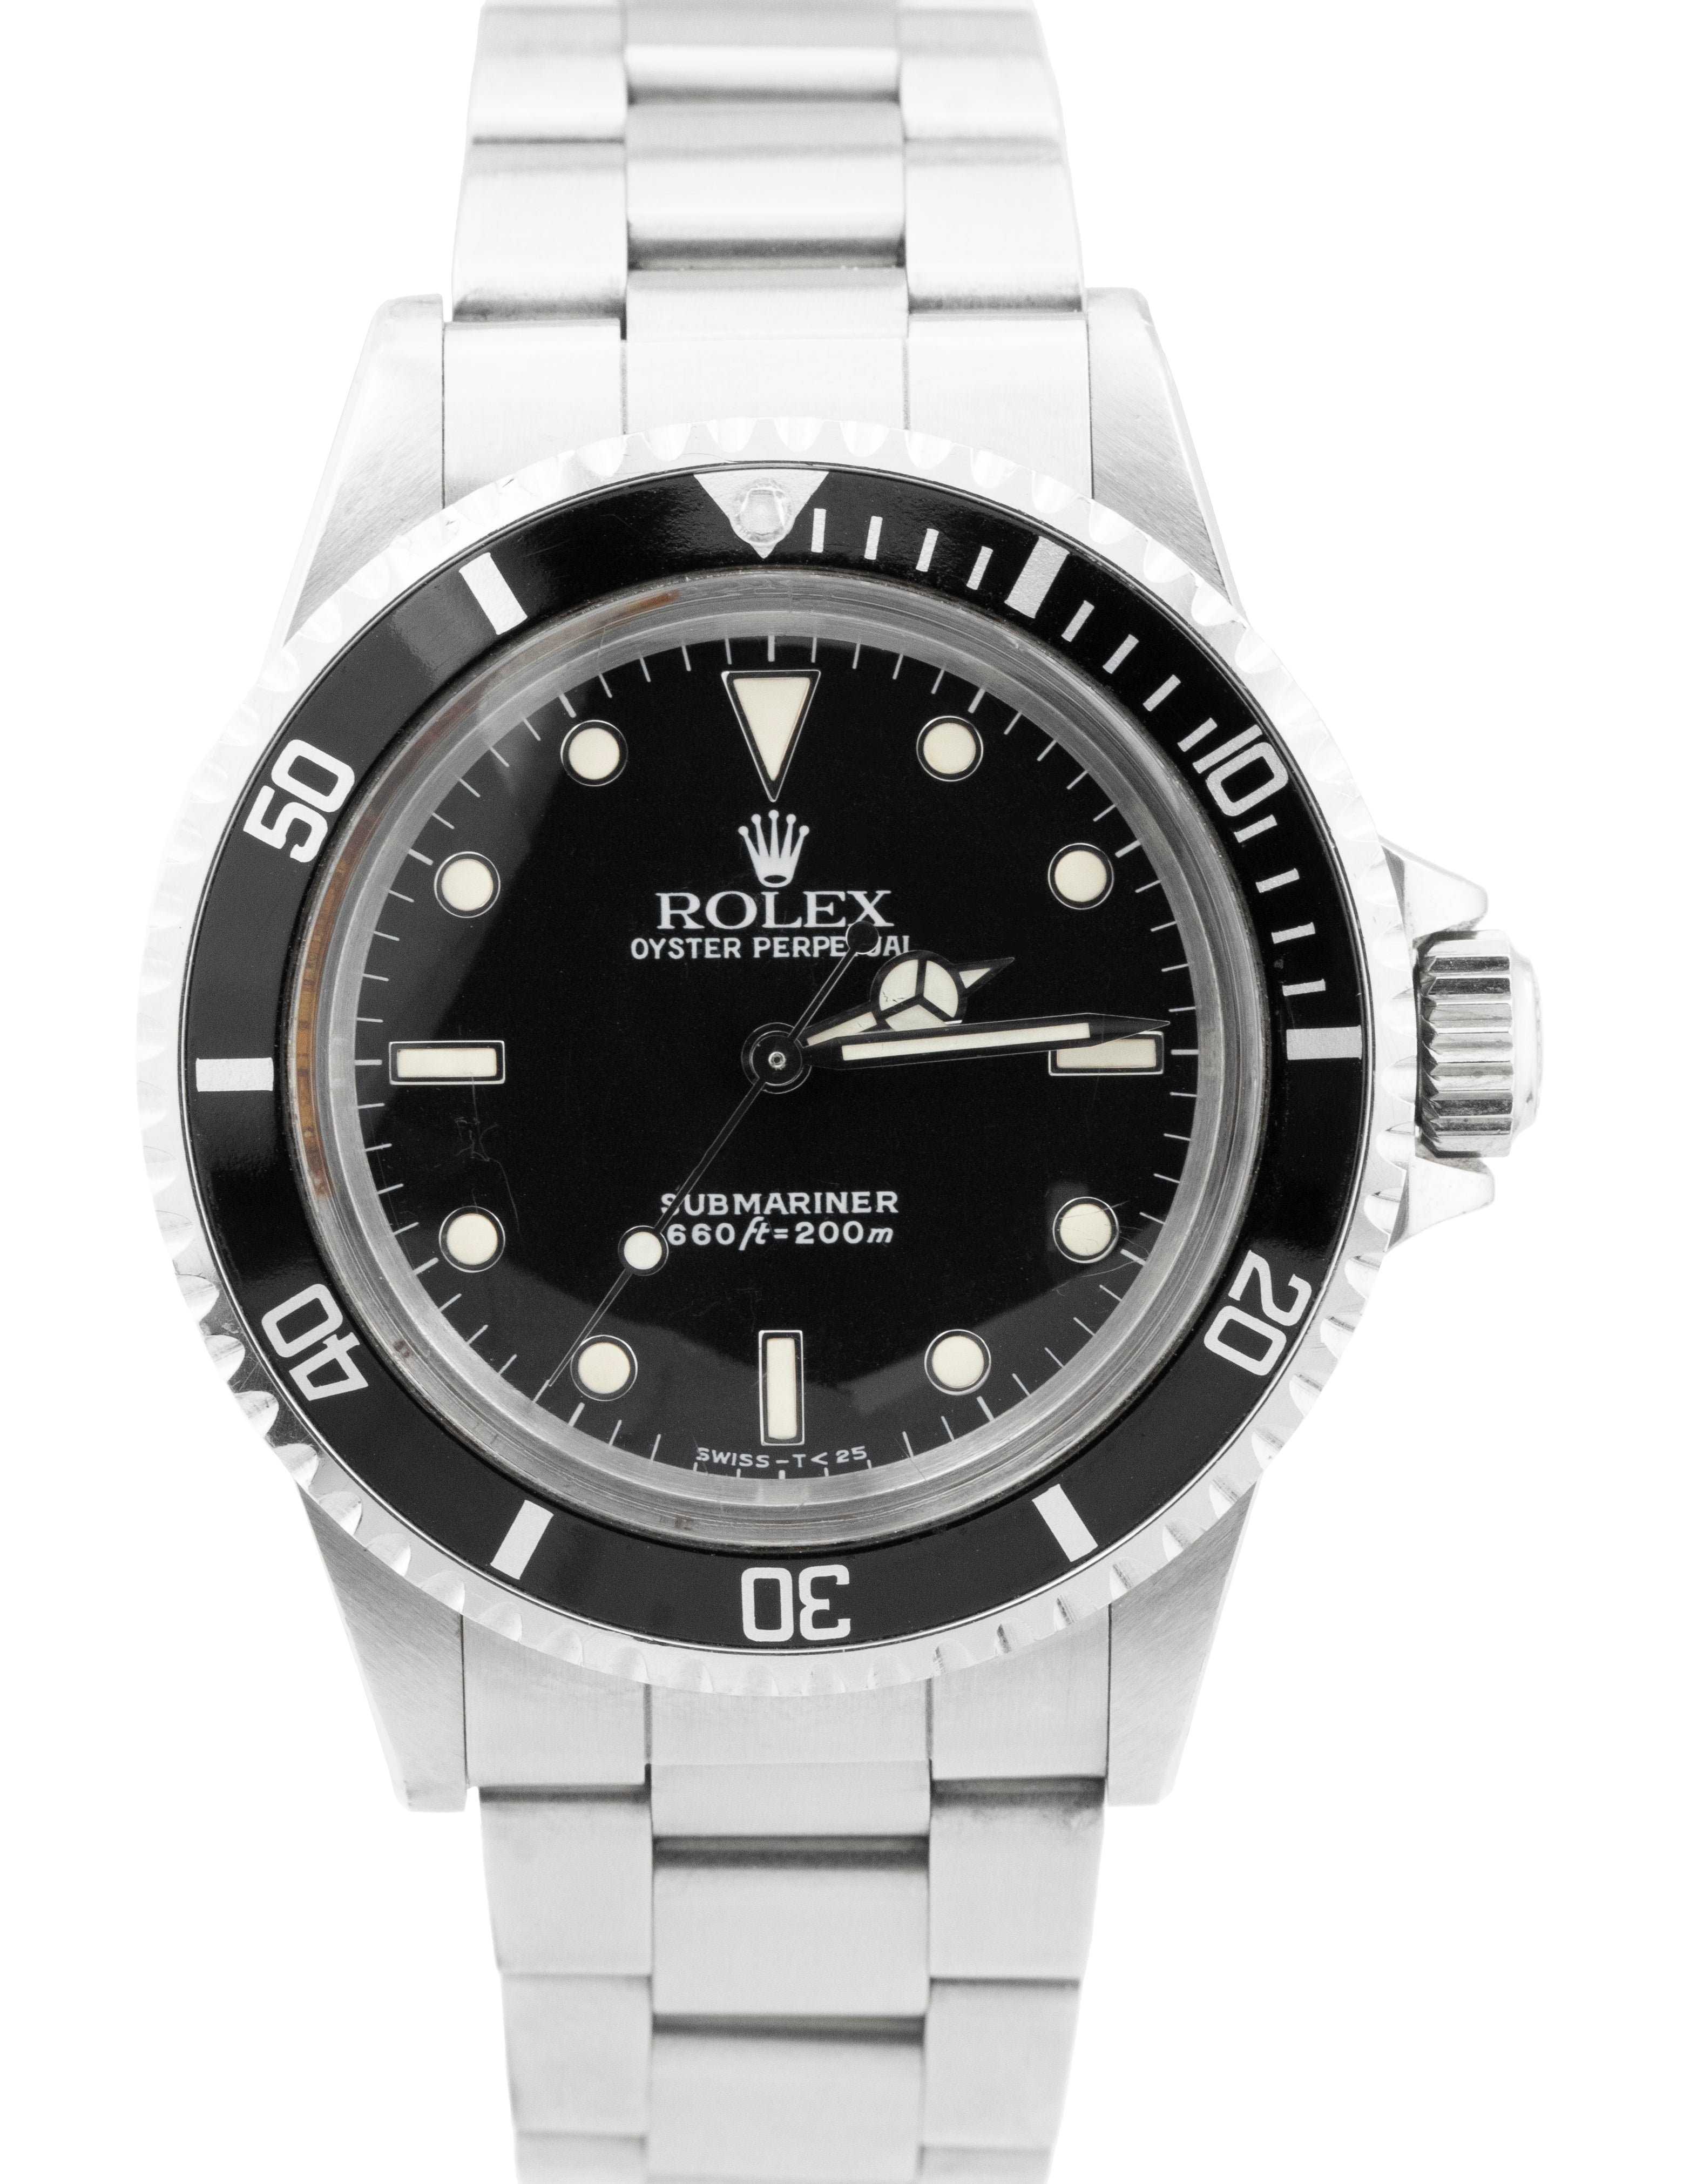 UNPOLISHED Rolex Submariner No-Date Stainless Steel Tritium 40mm Watch 5513